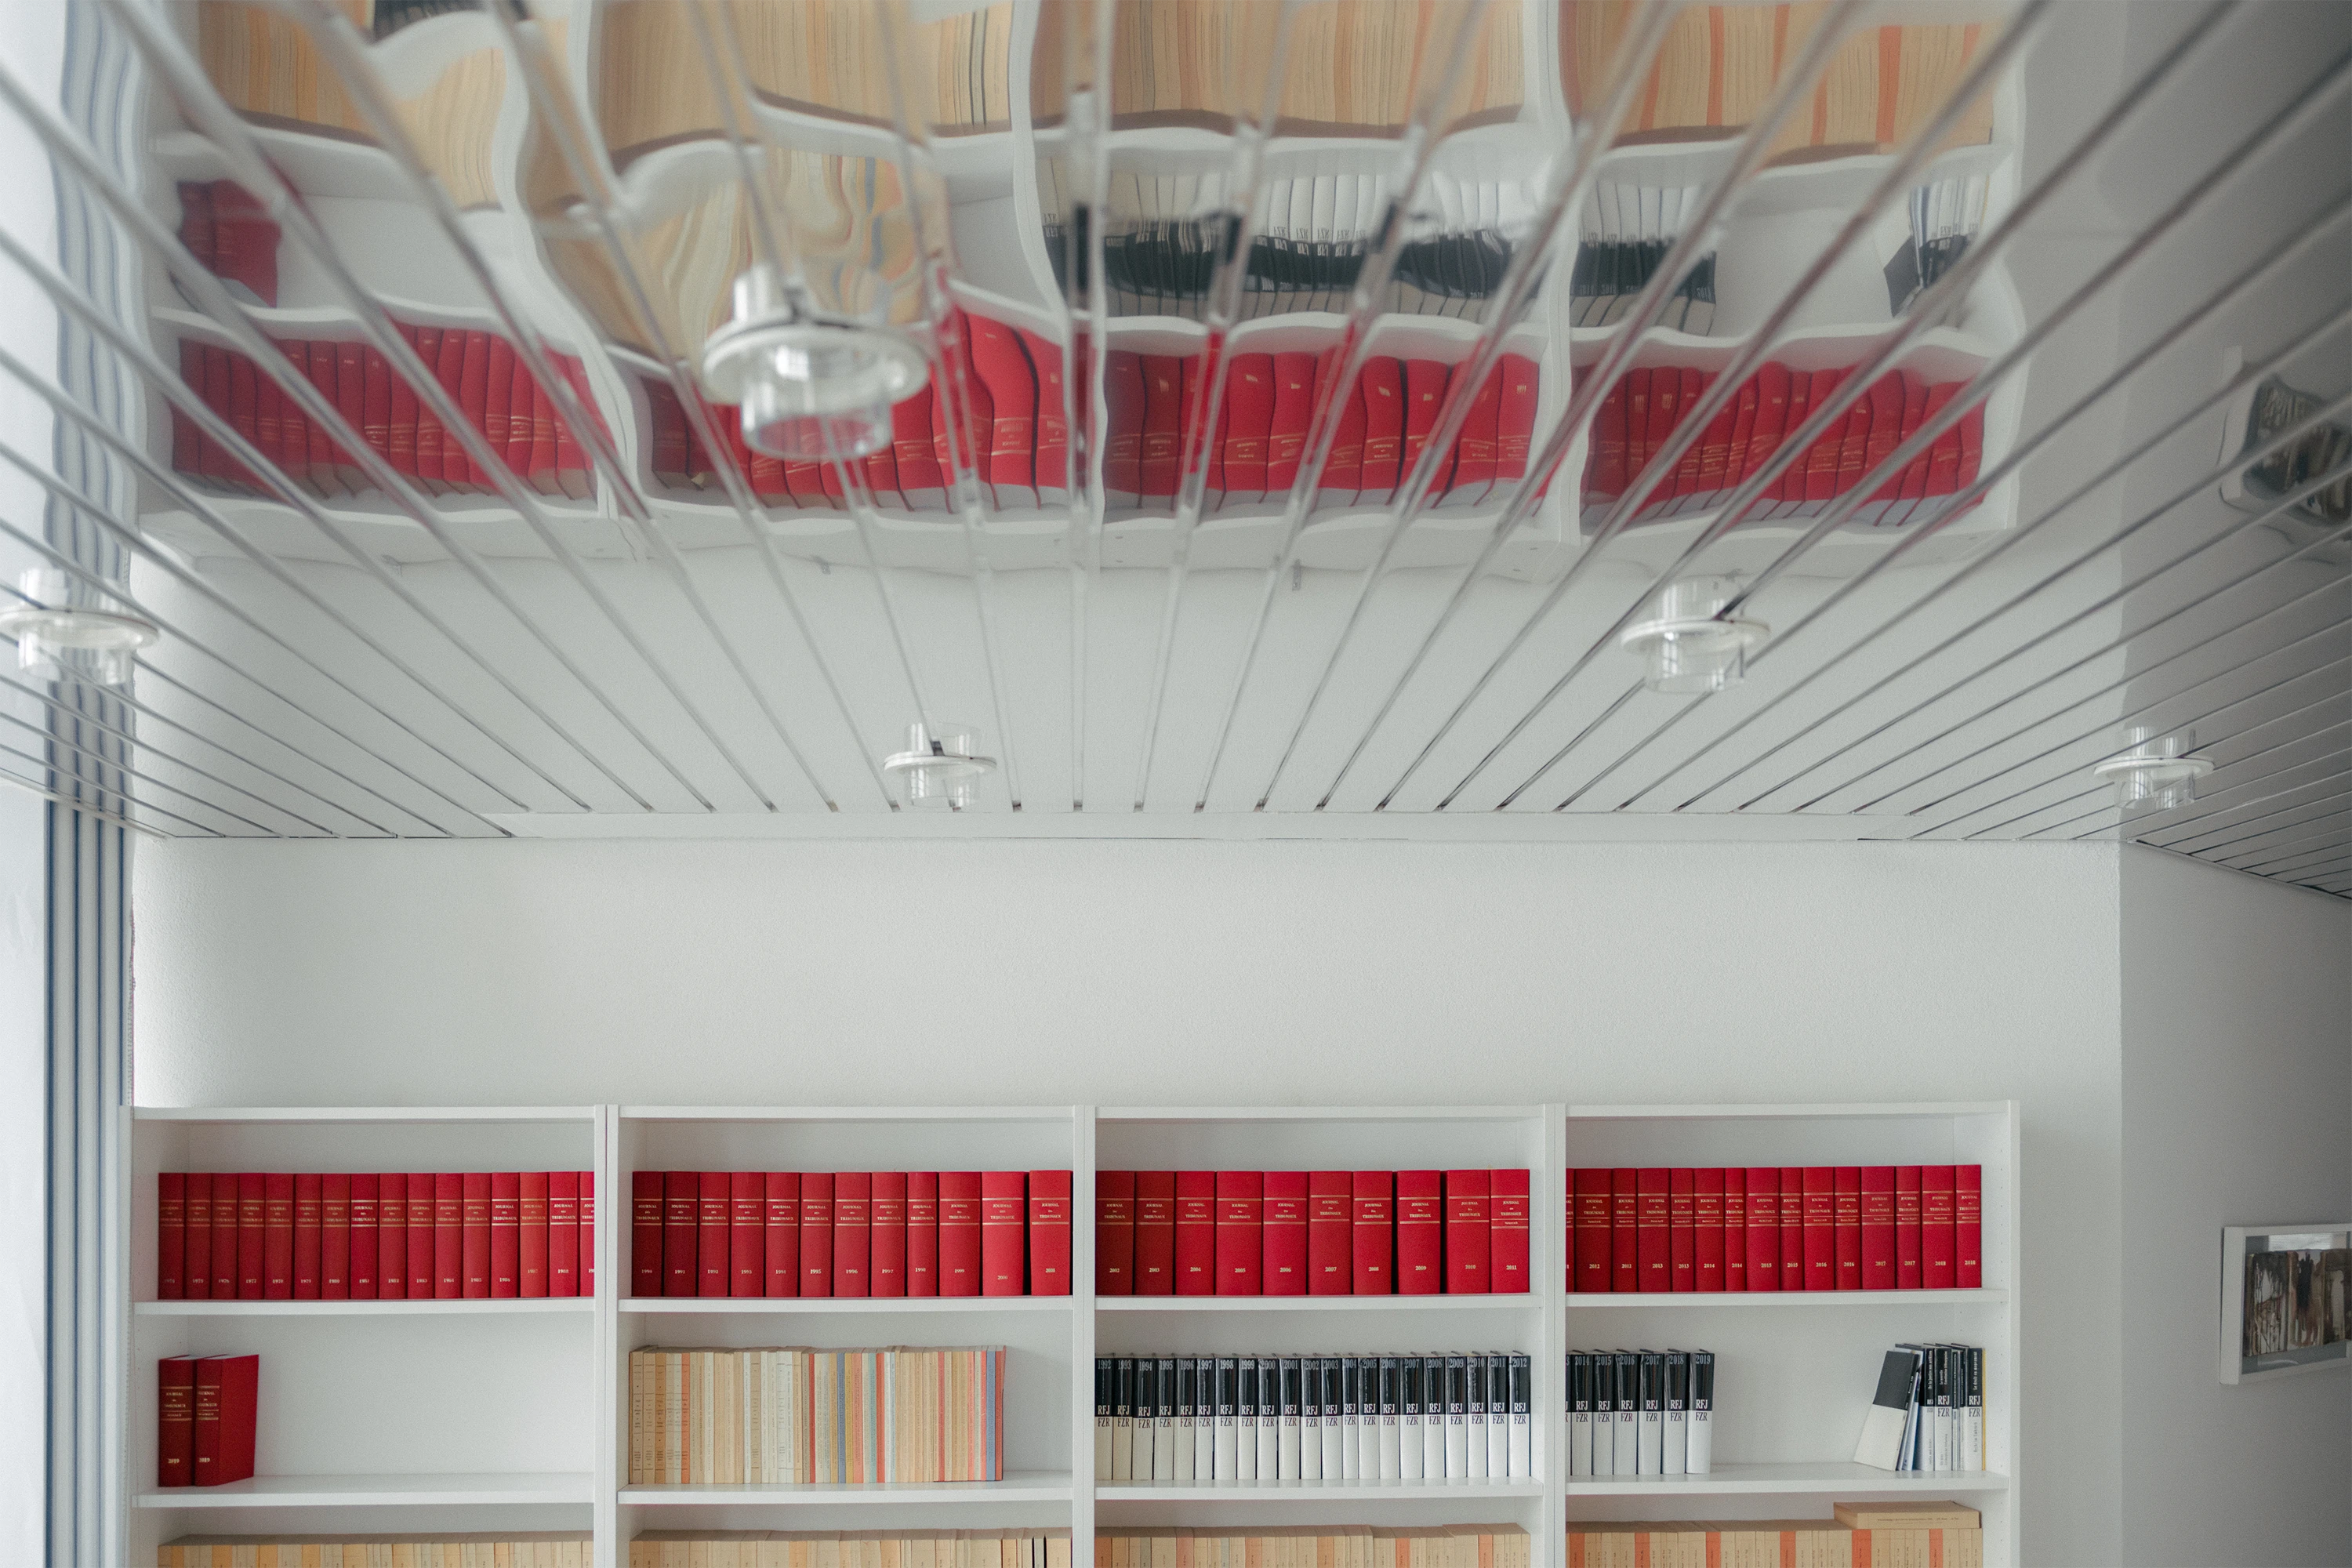 Une armoire remplie de livre juridique vue au travers de la réflection du plafond.